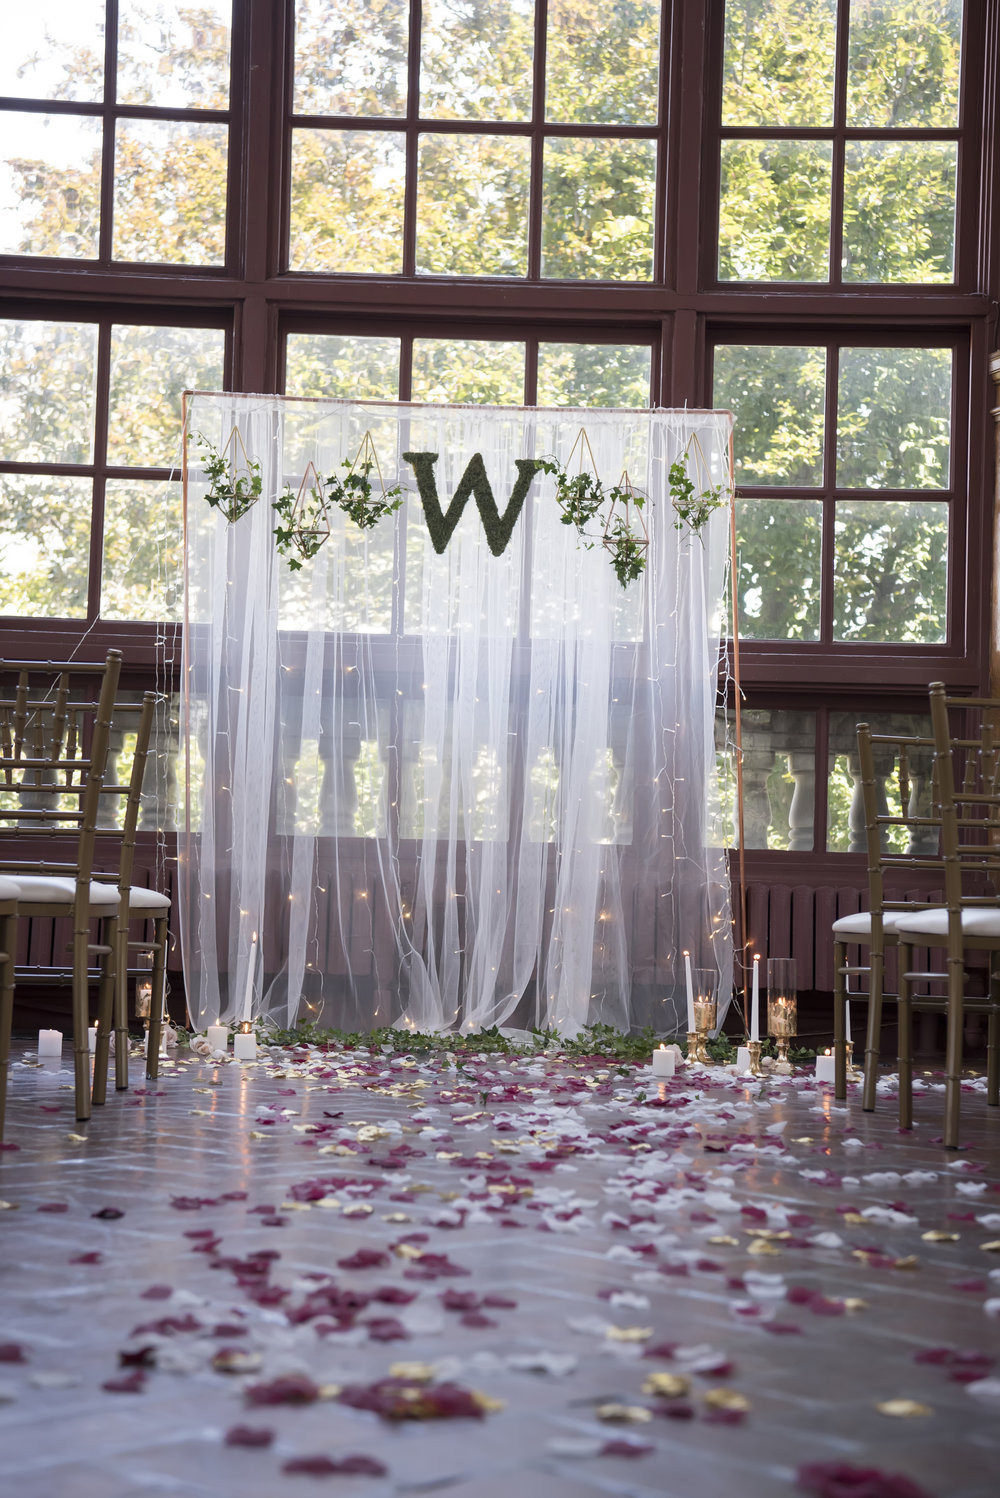 DIY Wedding Backdrops Ideas
 DIY Wedding Ceremony Backdrop No Tools Required